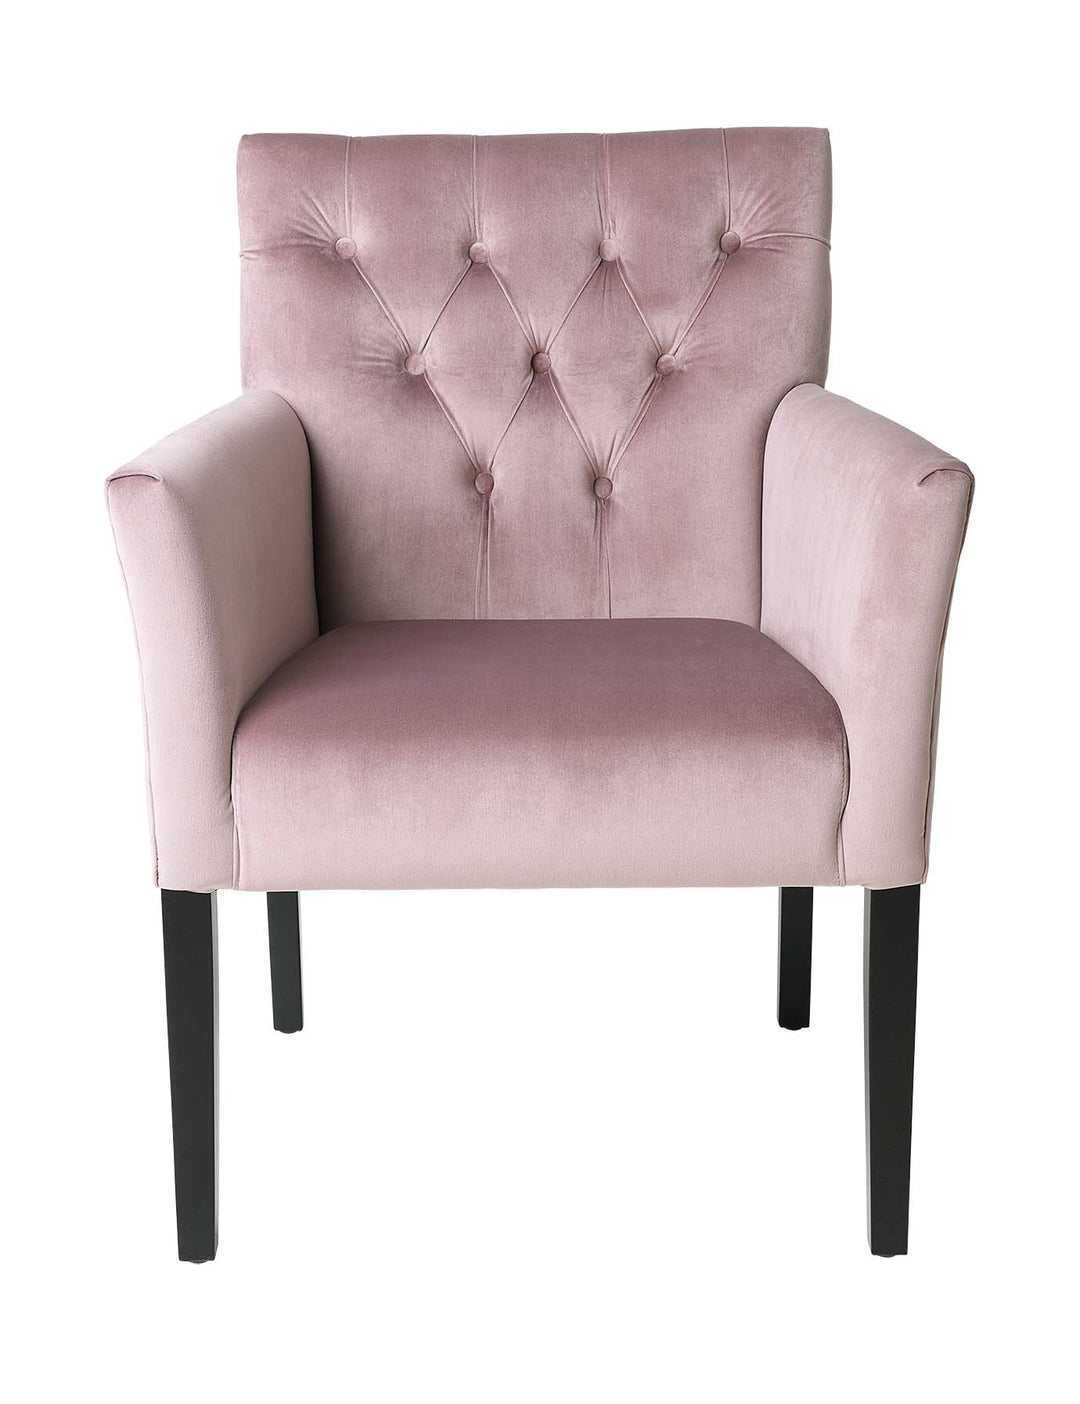 Cozy Living Chair - Sander Dining chair - Velvet - OLD ROSE